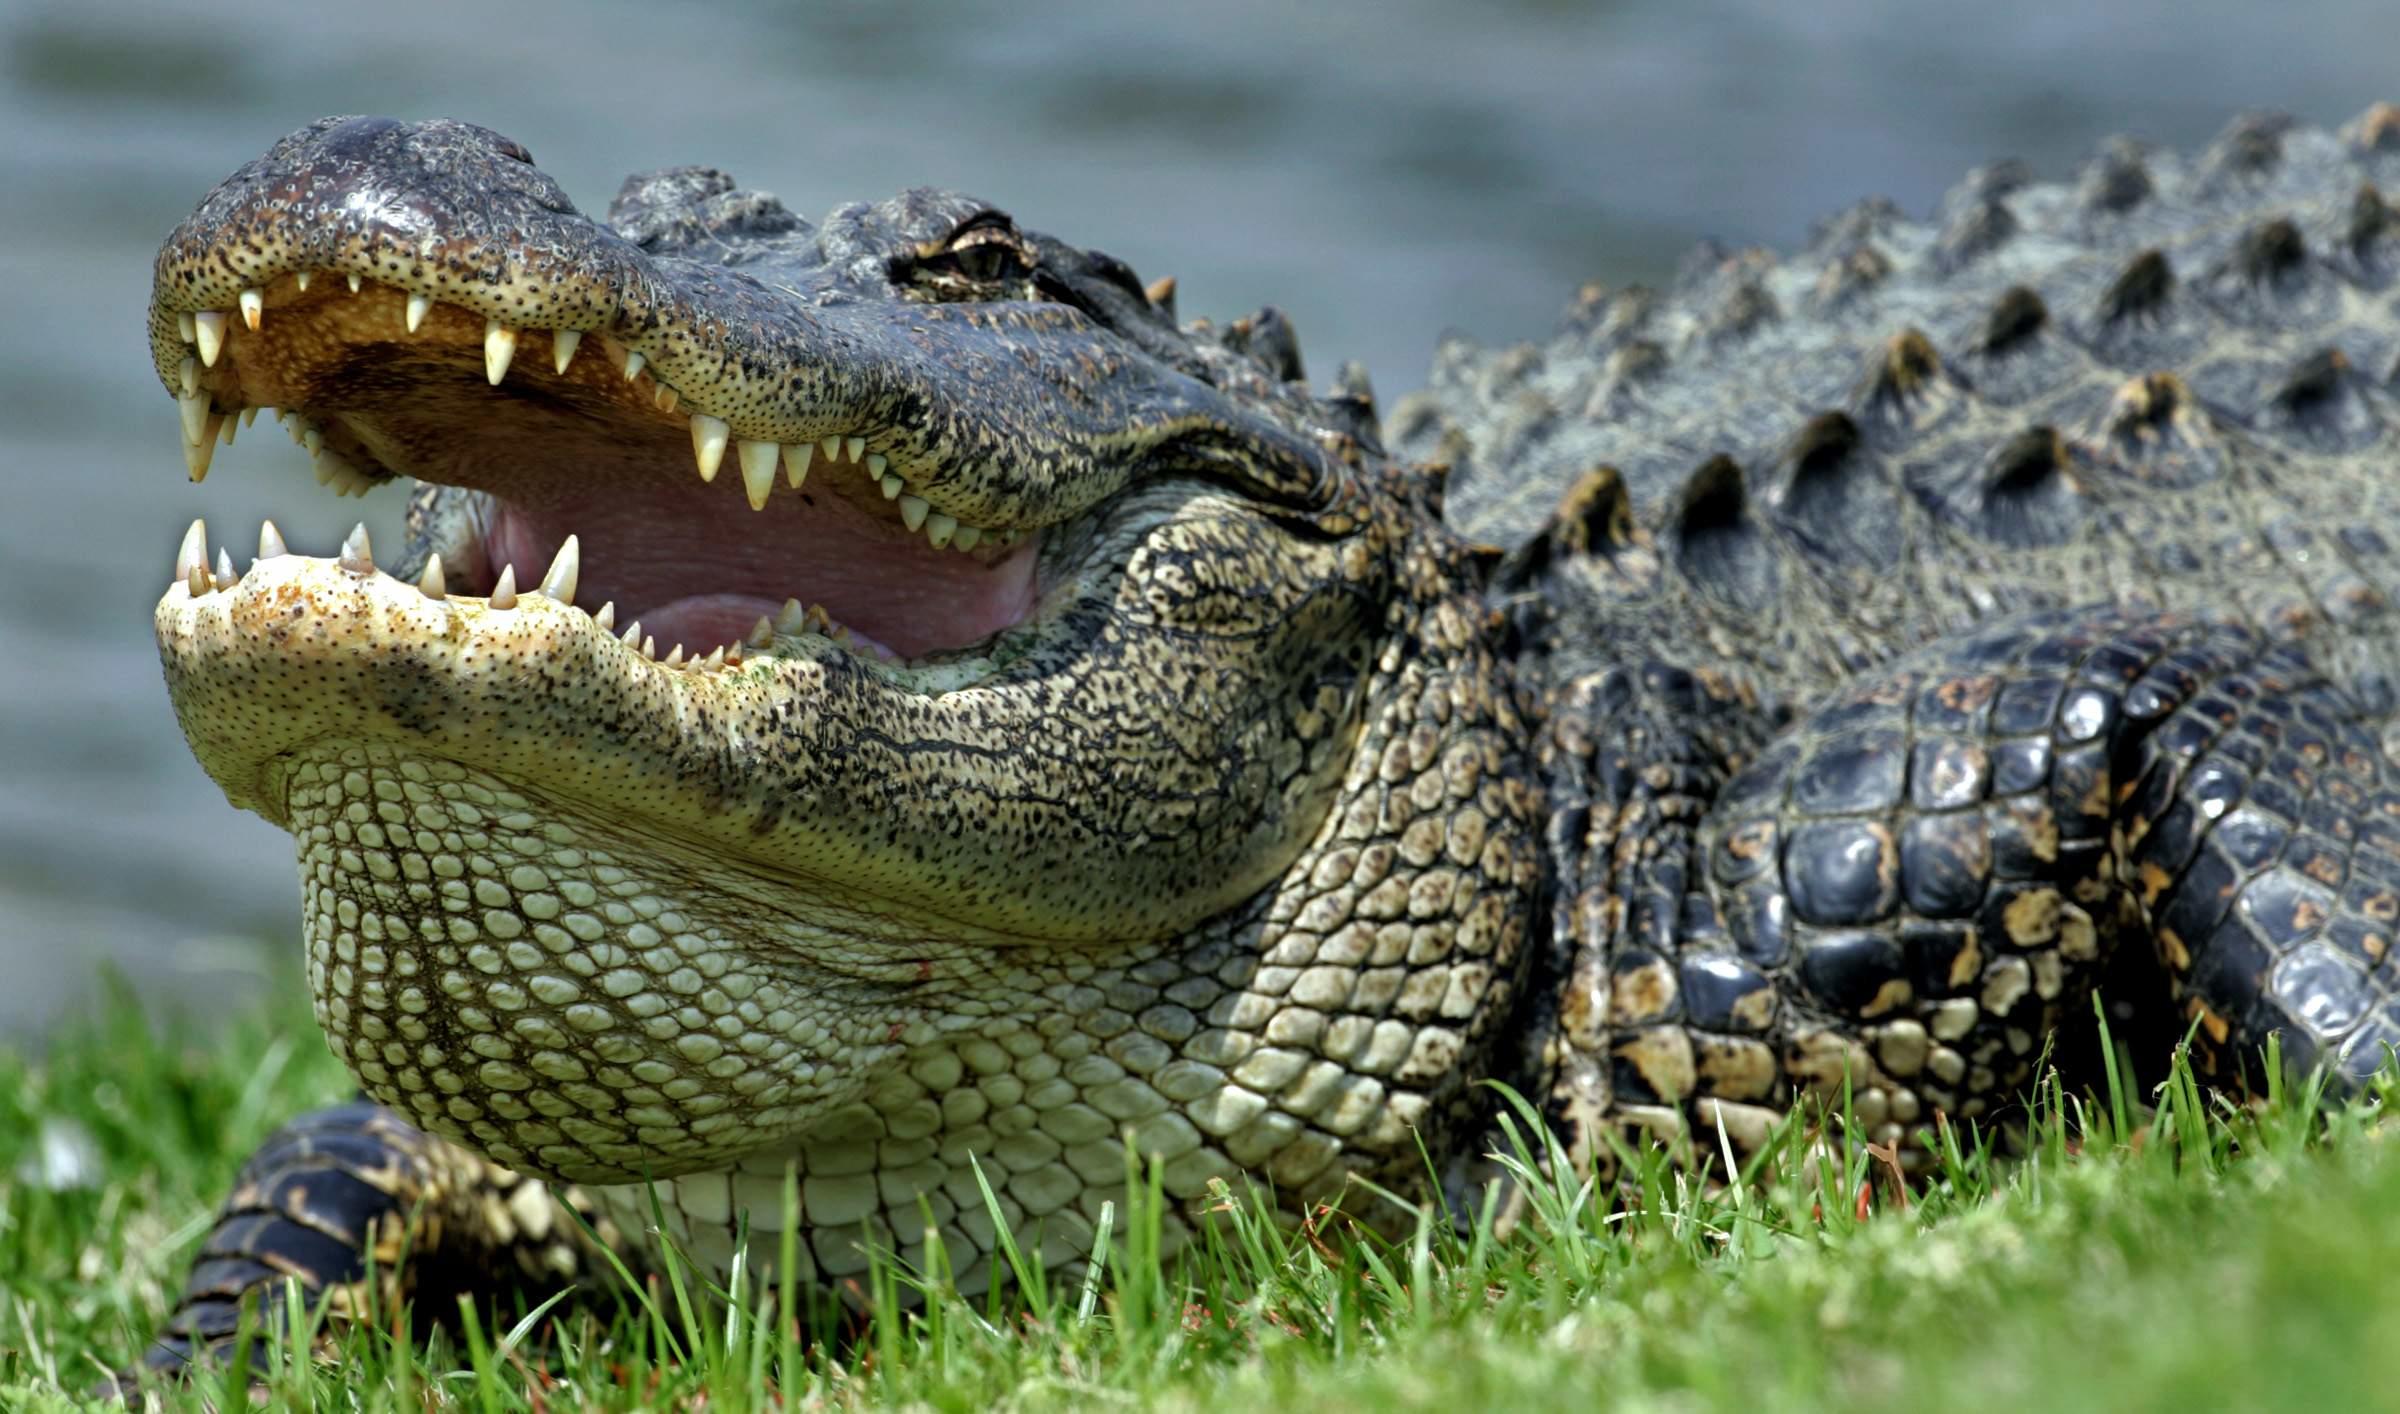 Alligators of Hilton Head Island